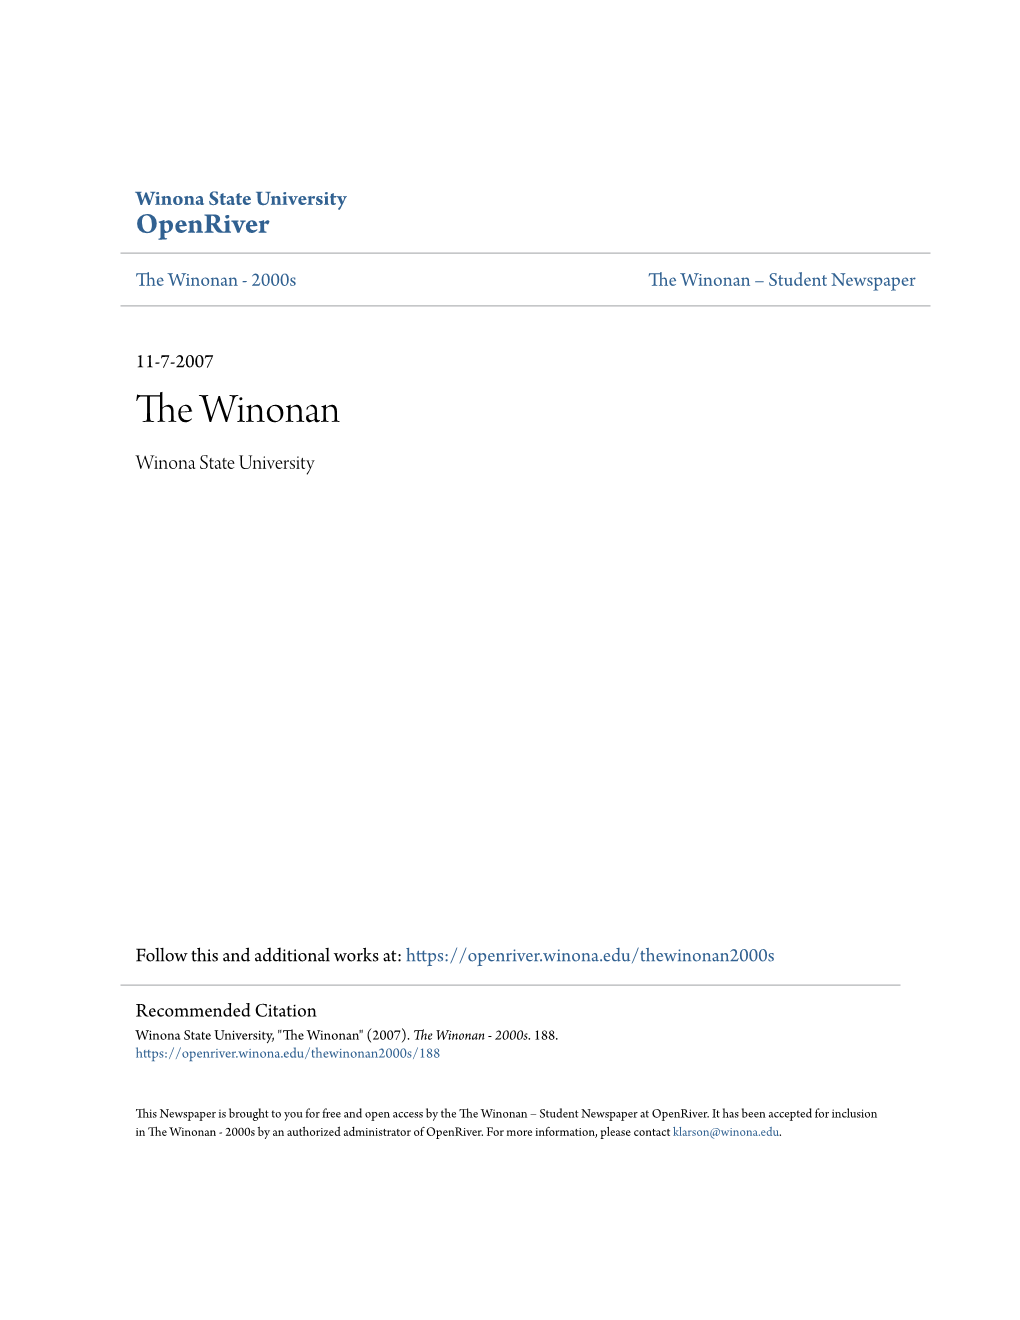 The Winonan - 2000S